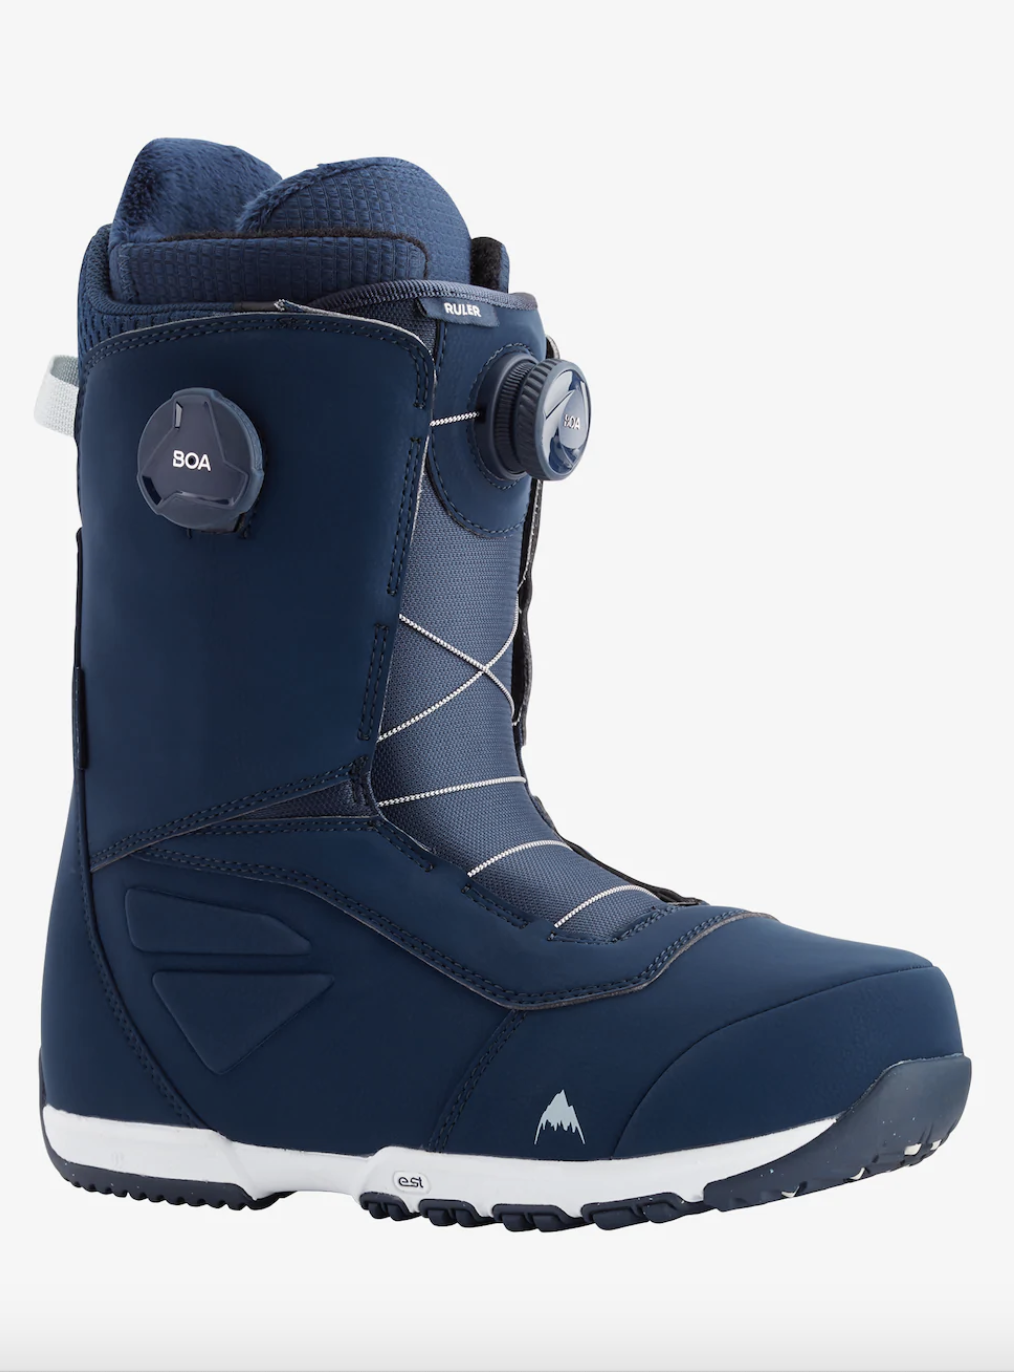 Boots de snowboard Ruler Boa 